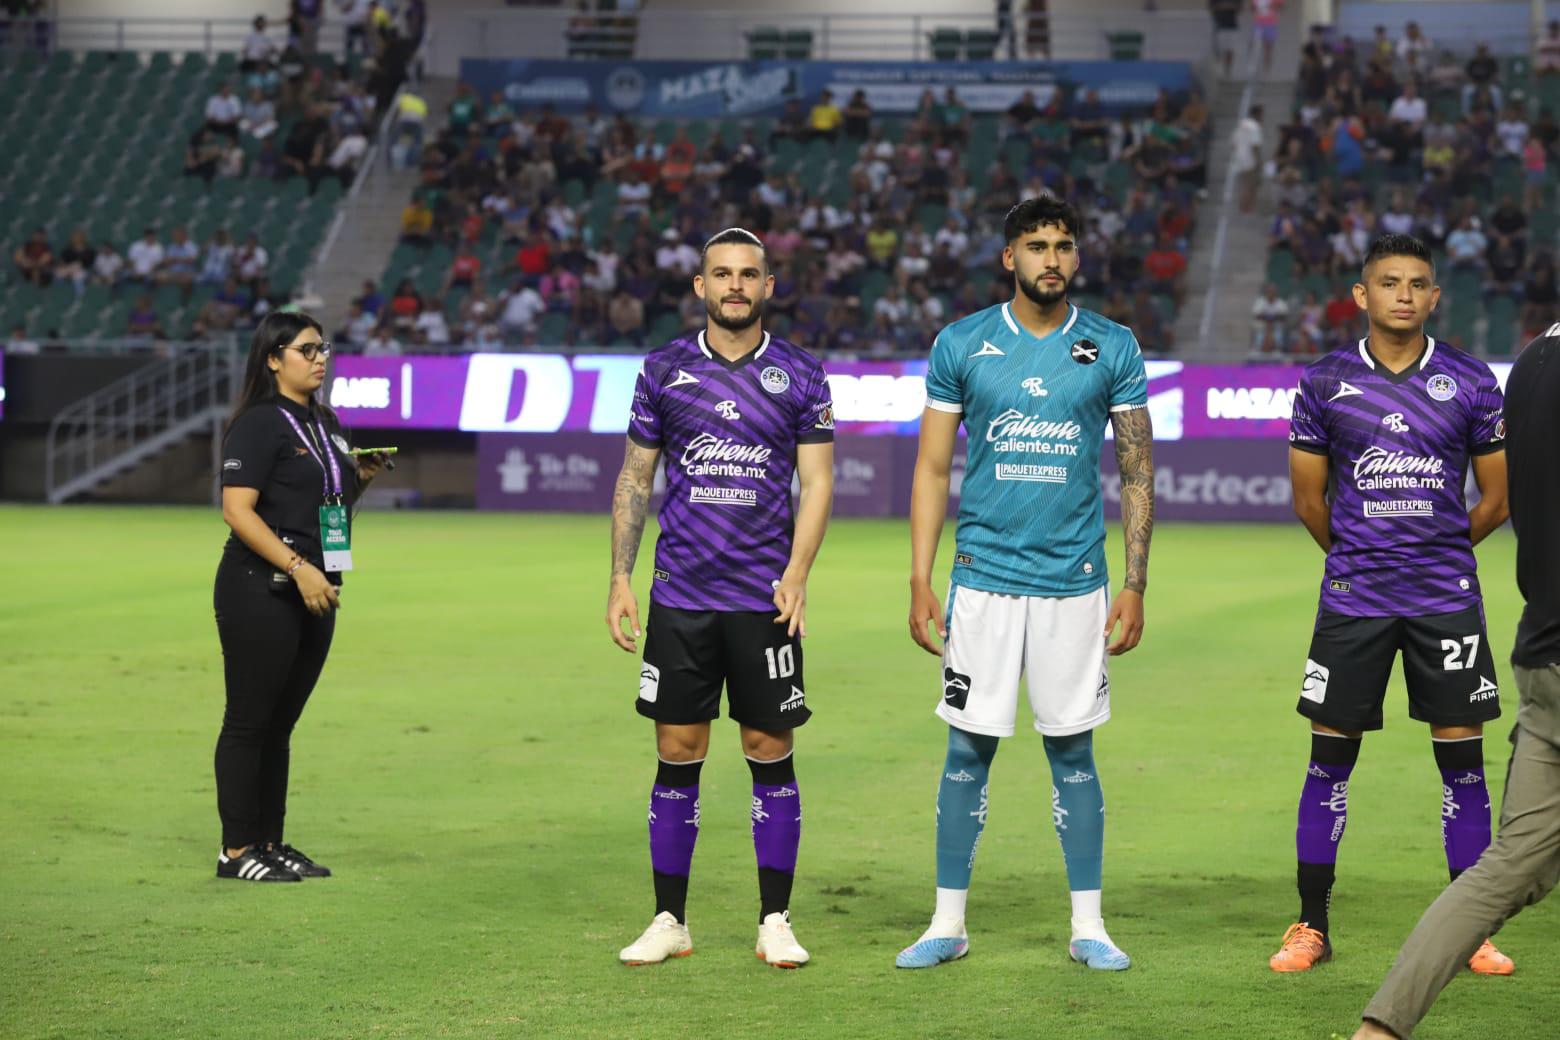 $!Los jugadores Nicolás Benedetti, Raúl Camacho y Miguel Sansores portaron ambos uniformes, el jersey local y visitantes, en el encuentro.